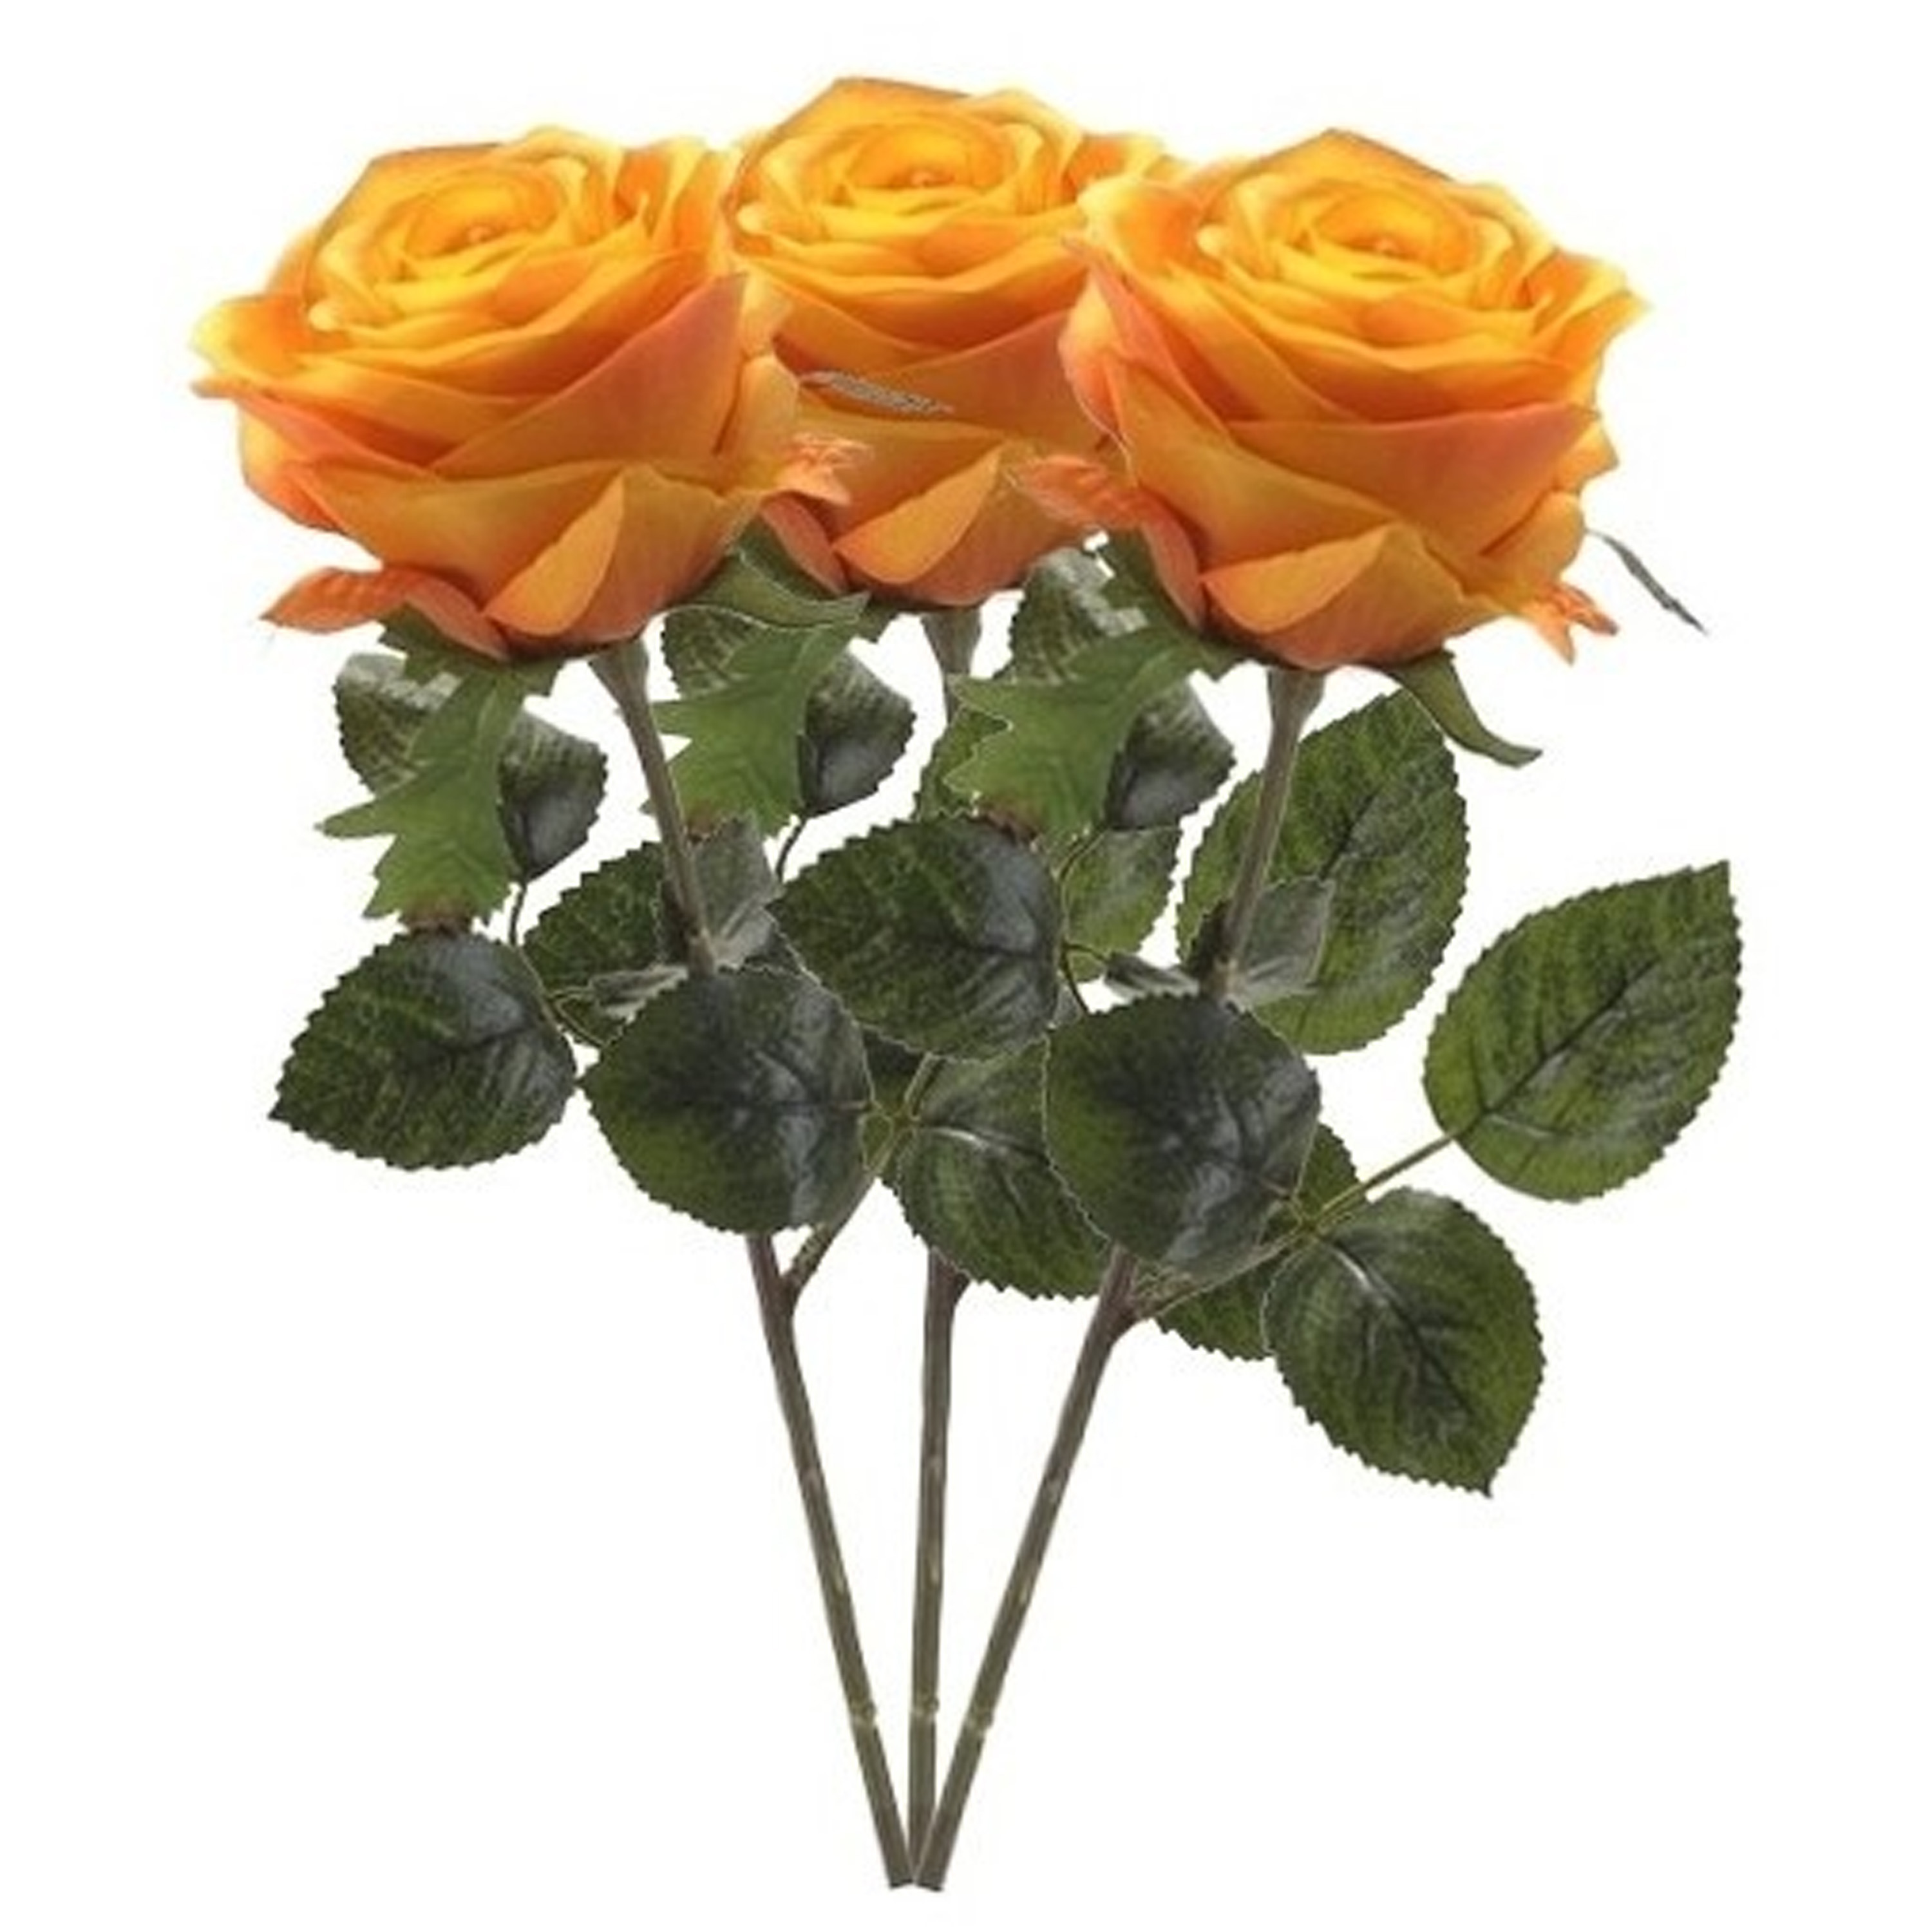 Emerald Kunstbloem roos Simone geel-oranje 45 cm decoratie bloemen